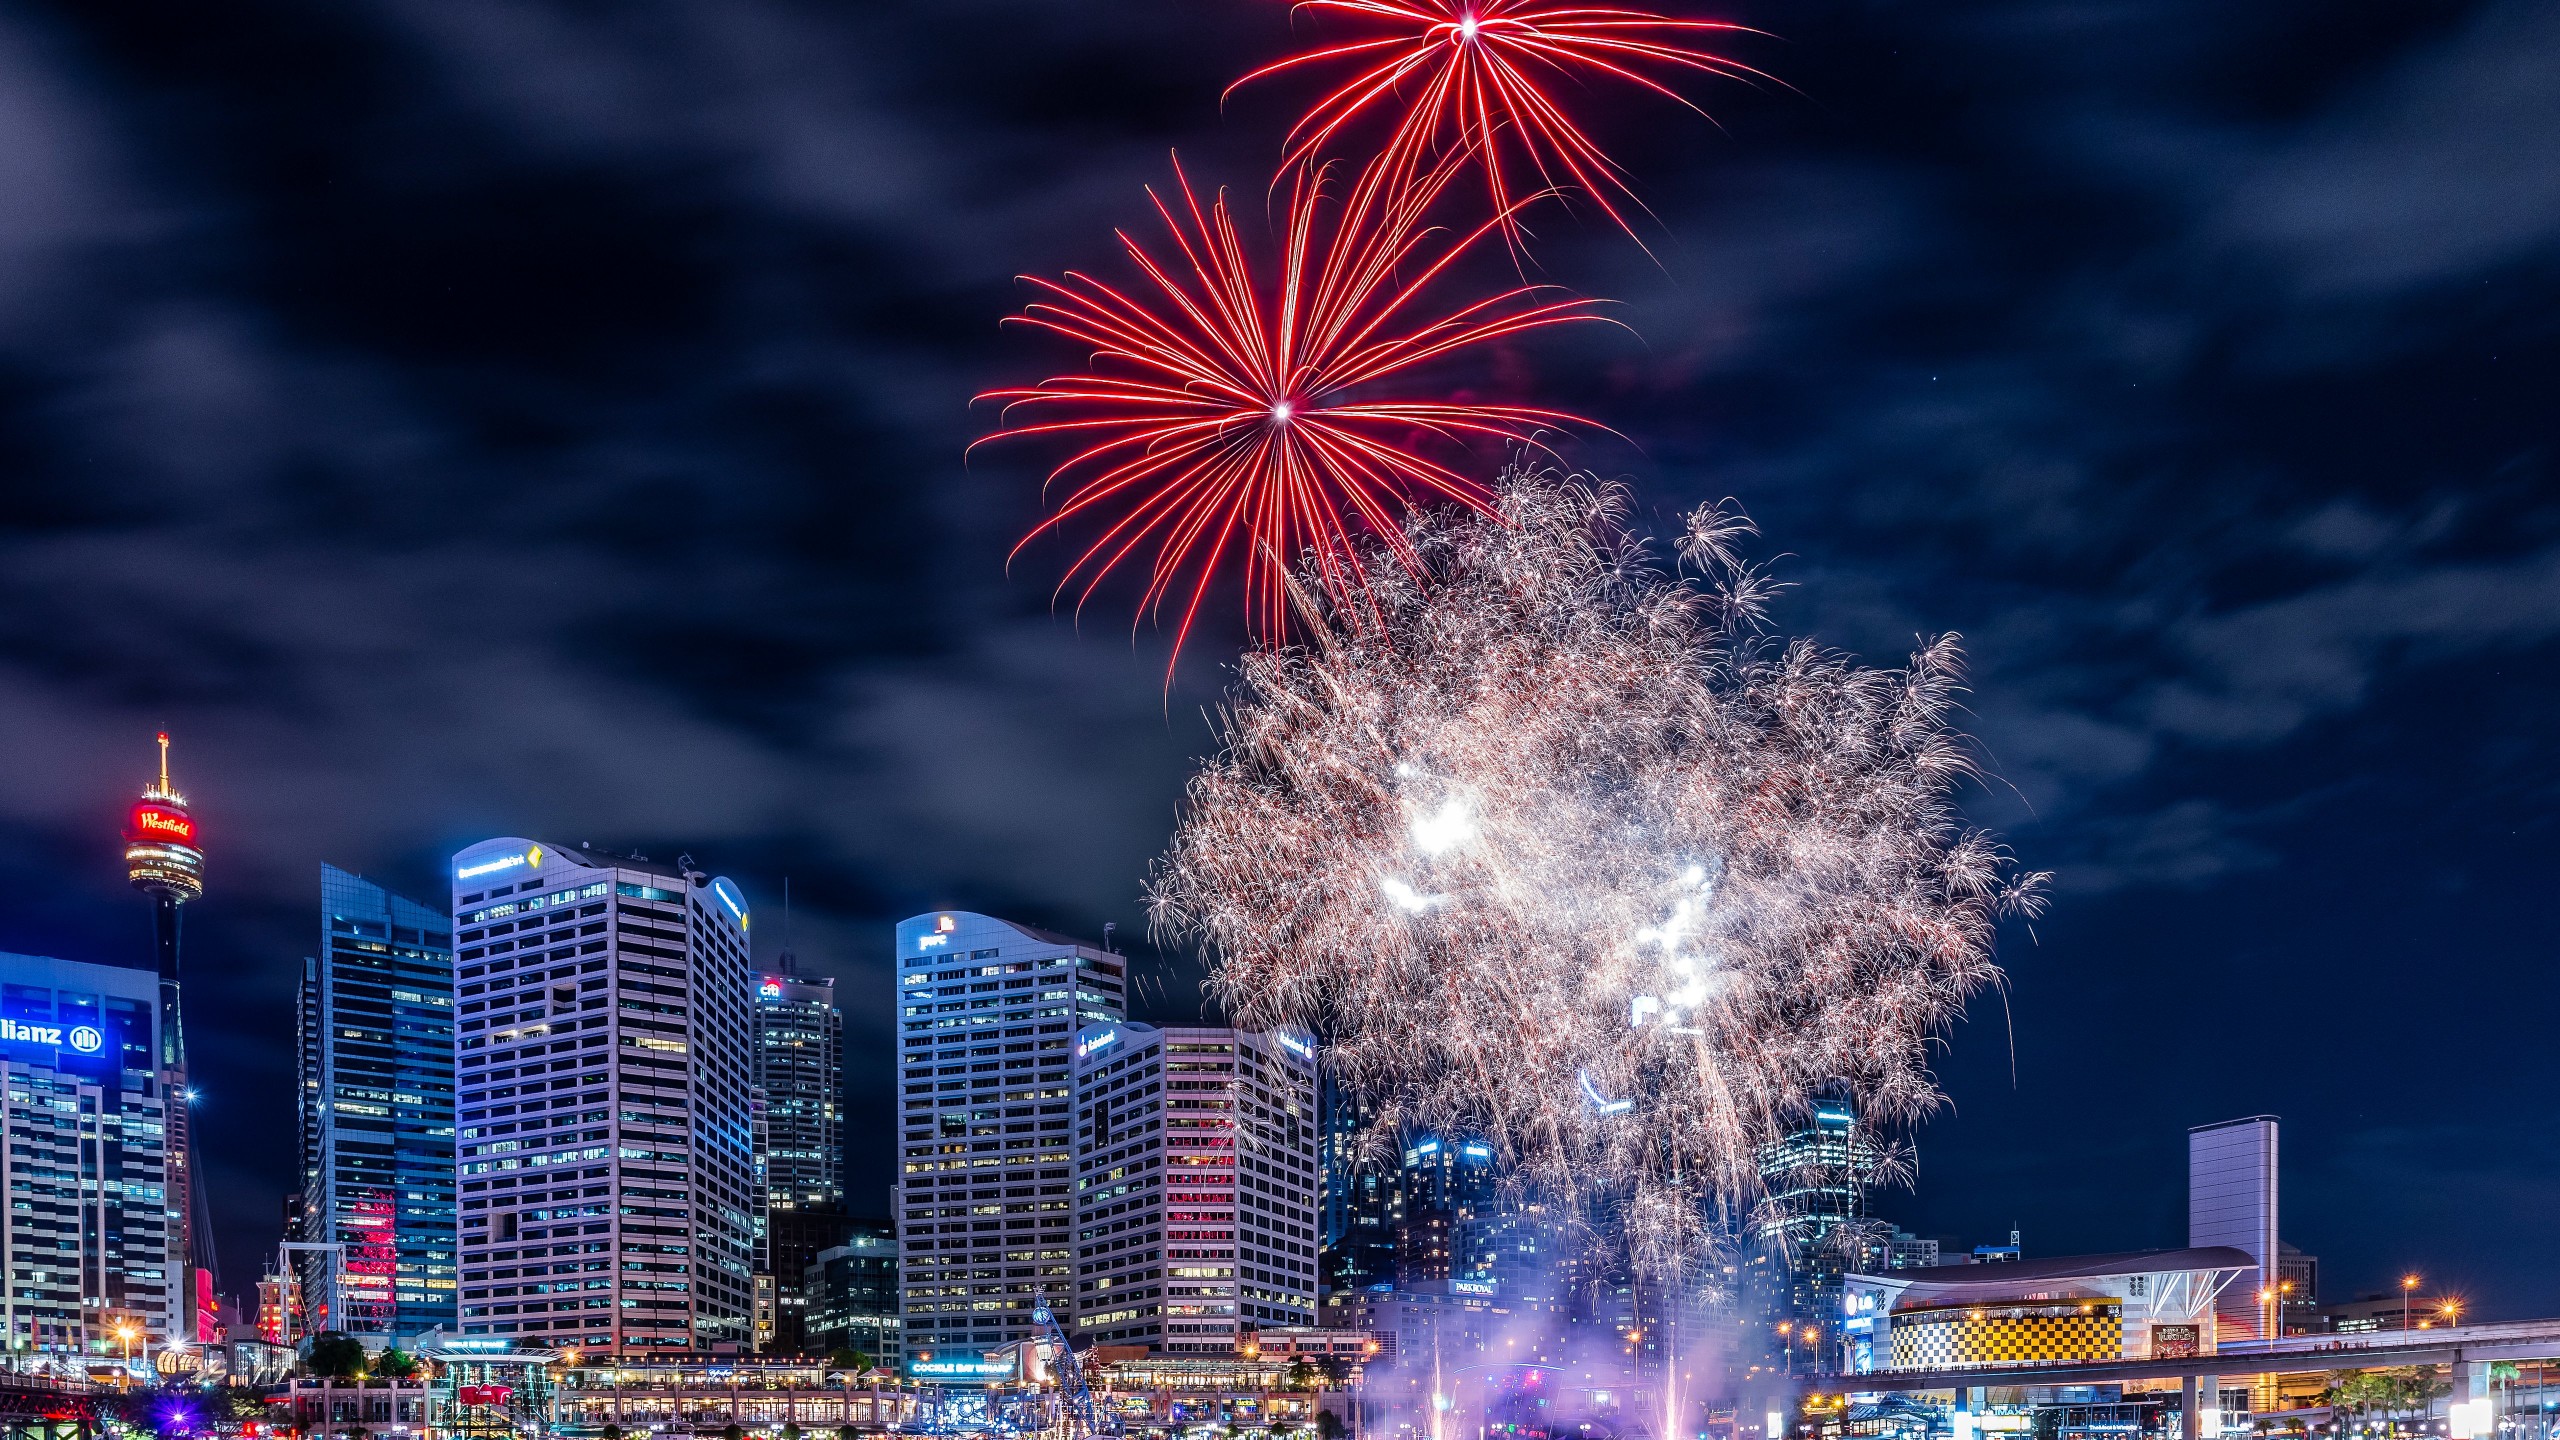 Fireworks In Darling Harbour Wallpaper for Desktop 2560x1440